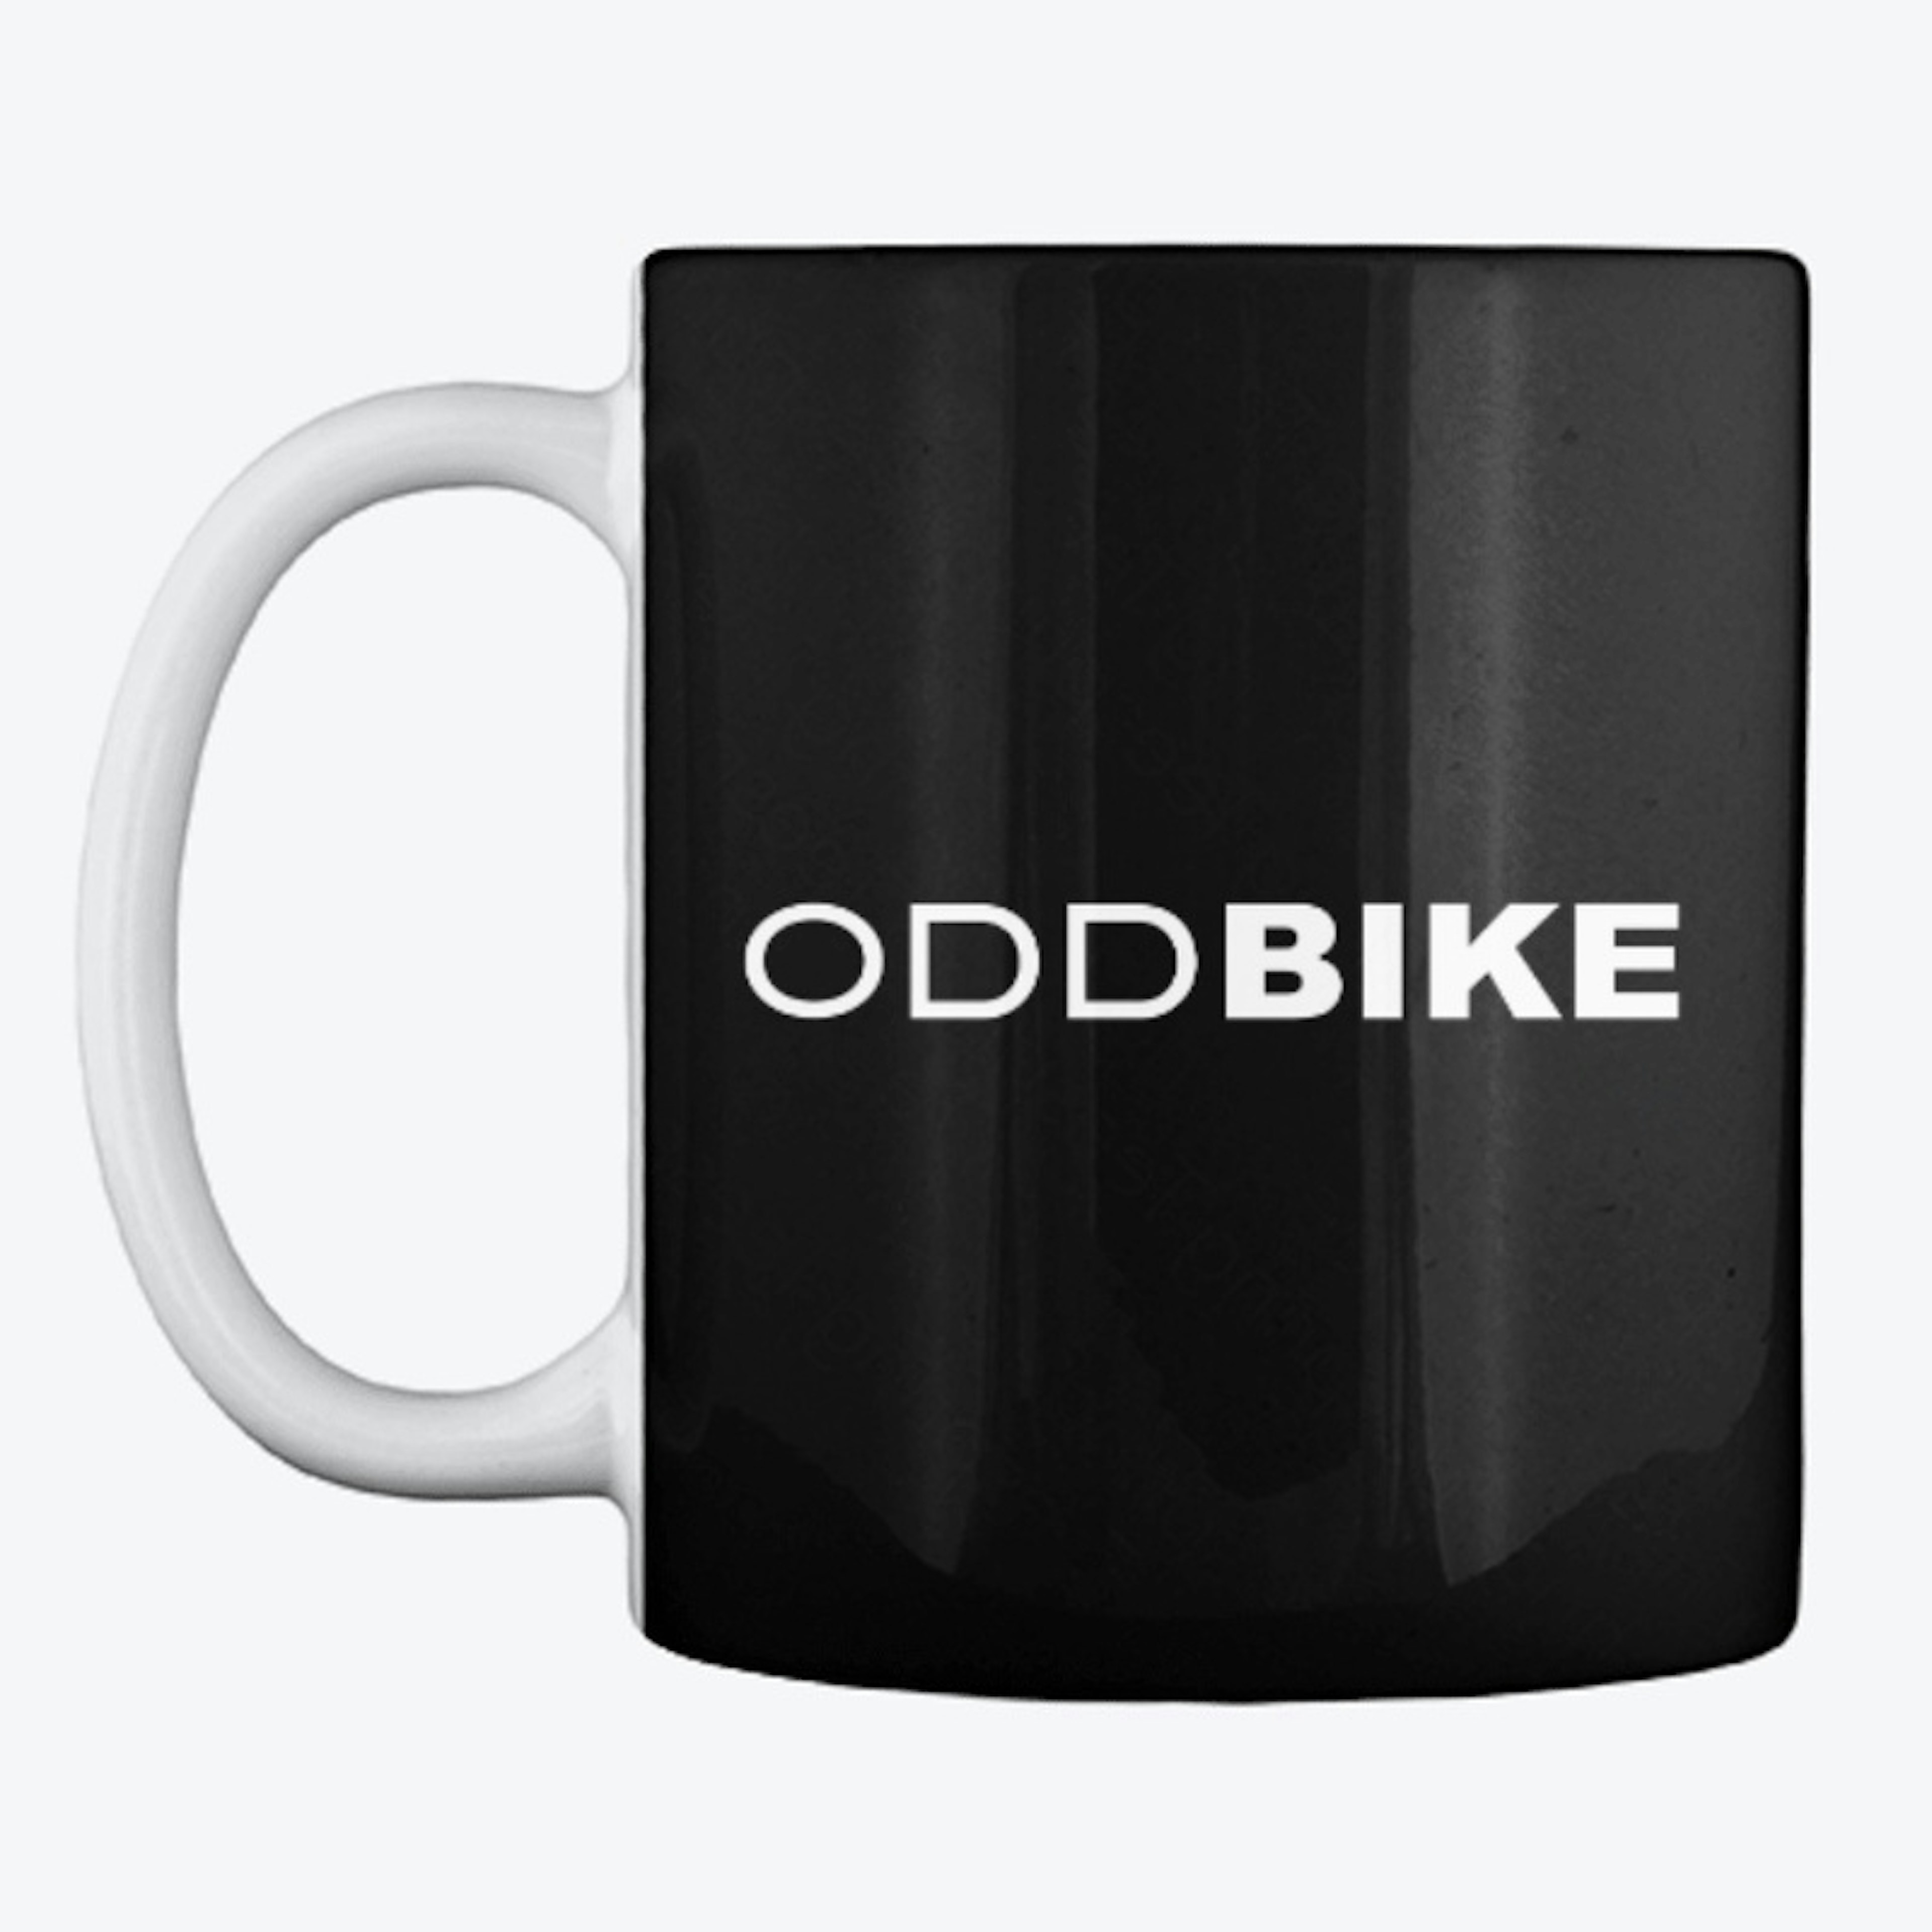 OddBike Black Mug